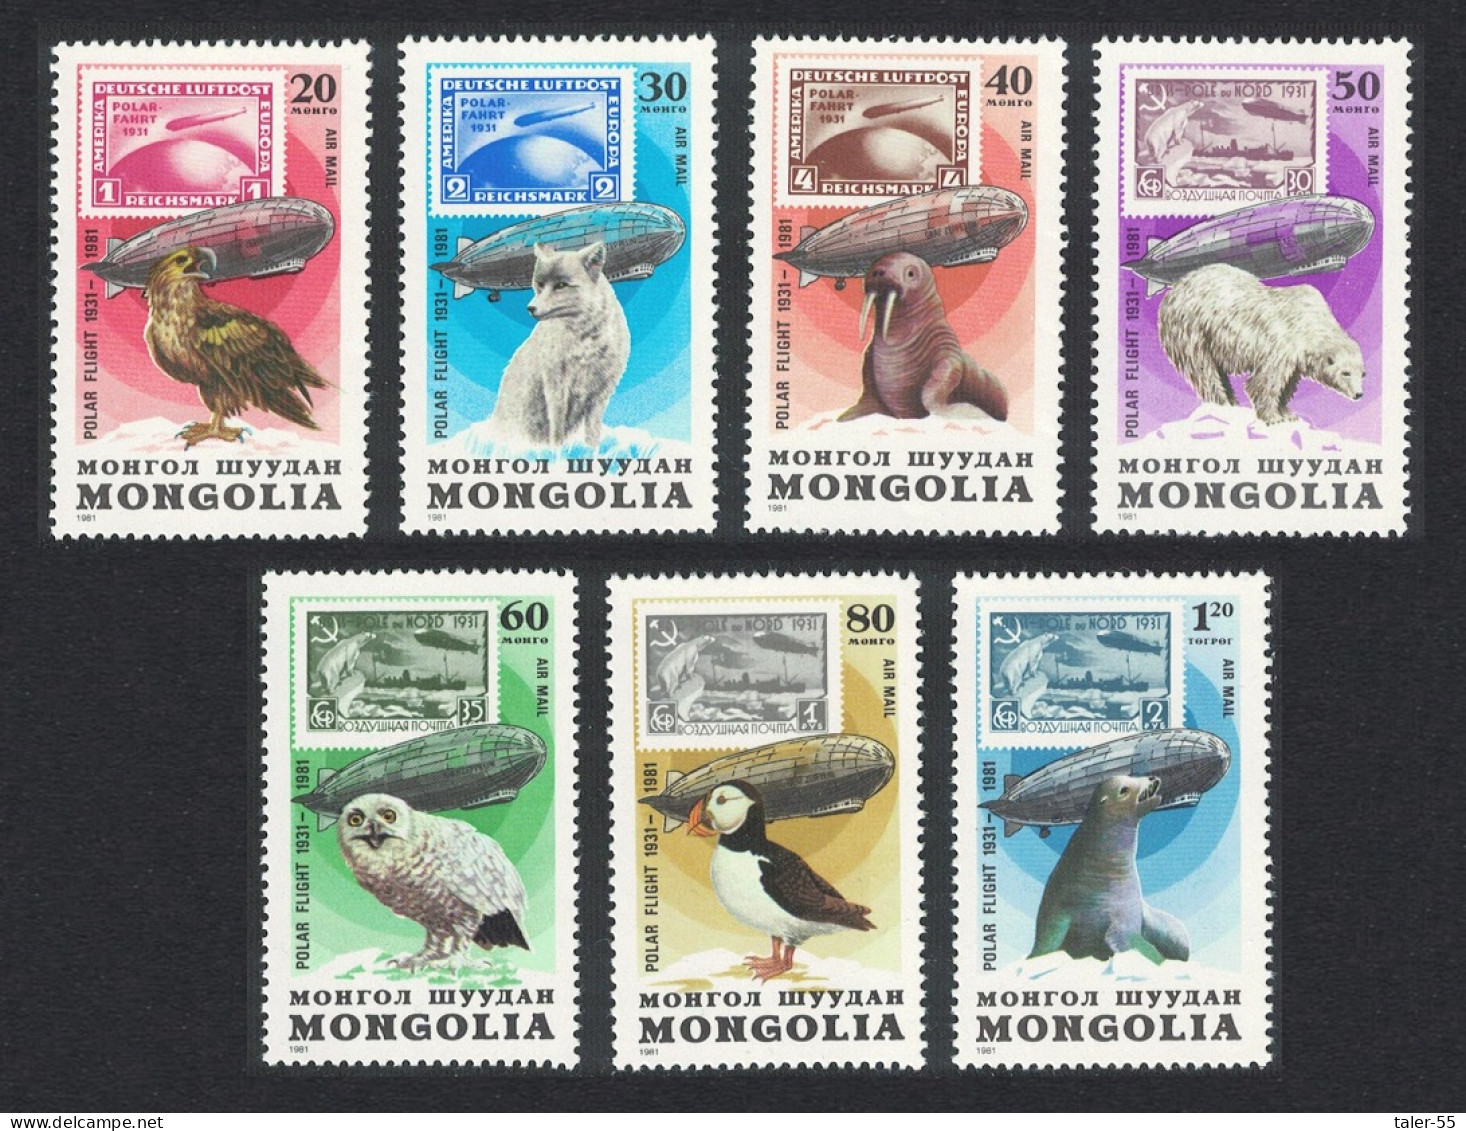 Mongolia Owl Eagle Puffin Birds Animals Zeppelin 7v 1981 MNH SG#1391-1397 - Mongolia